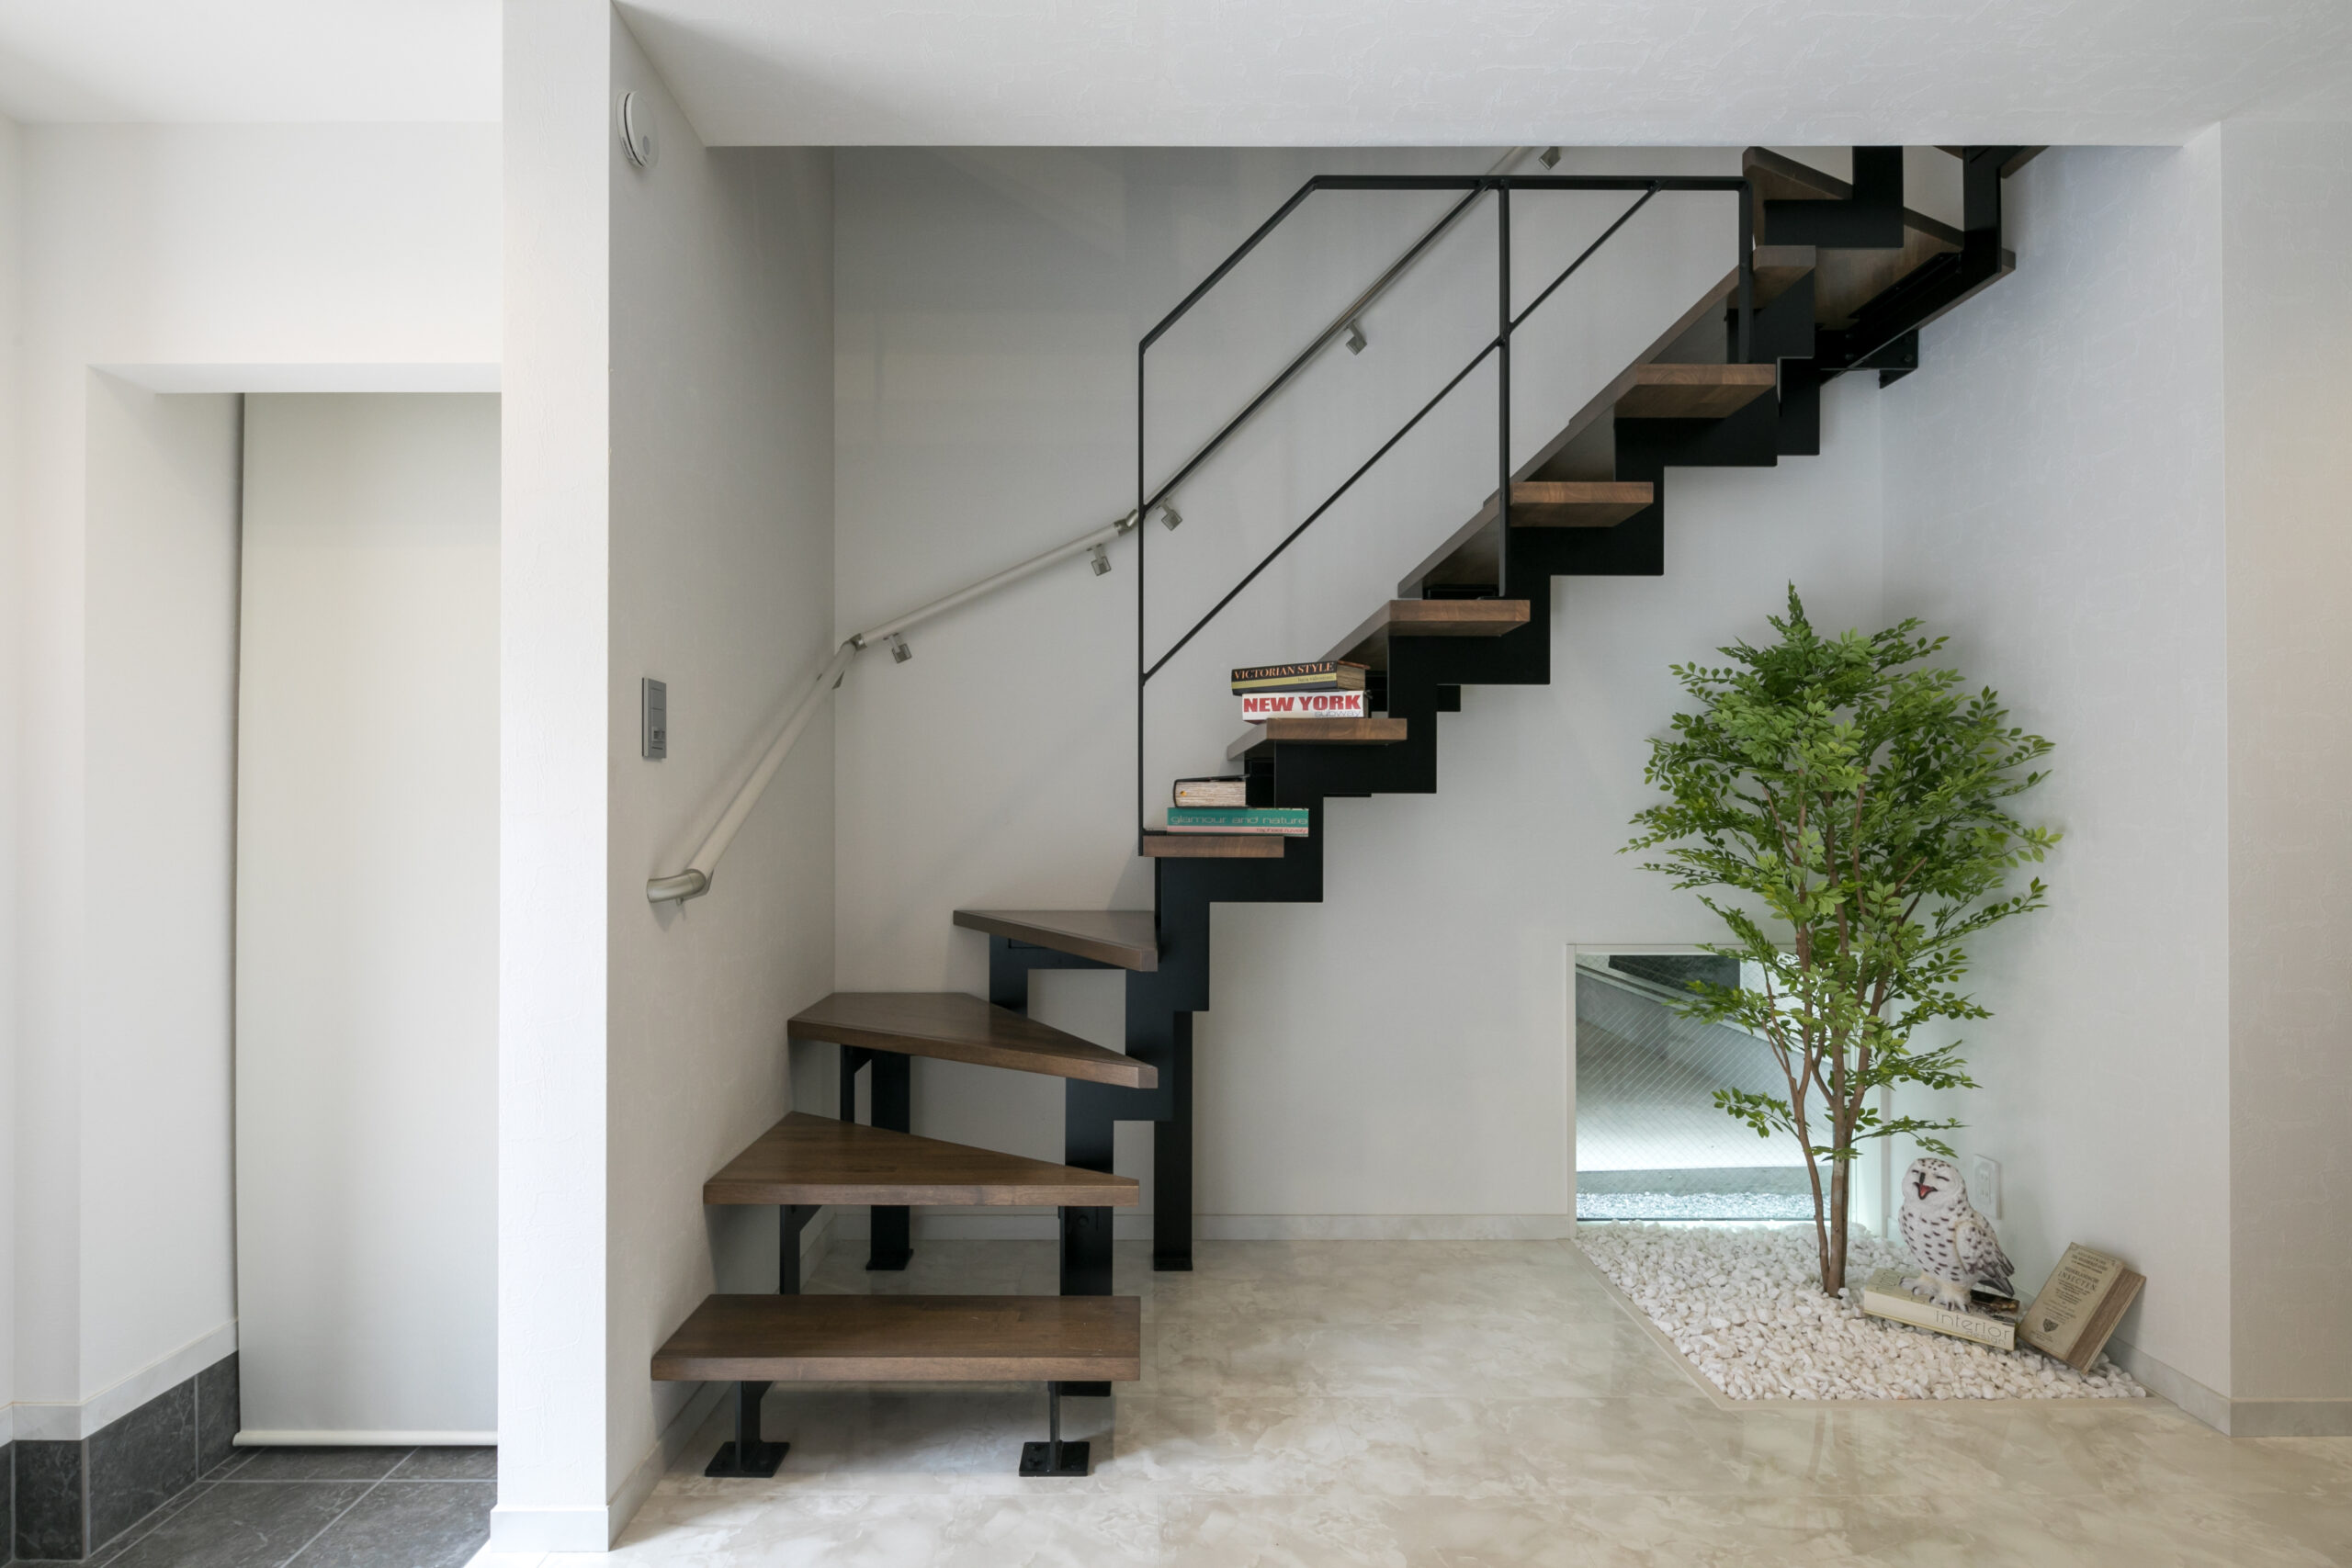 フォーライフ　モダンな印象のスチール階段は、空間を広く見せる効果もあります。